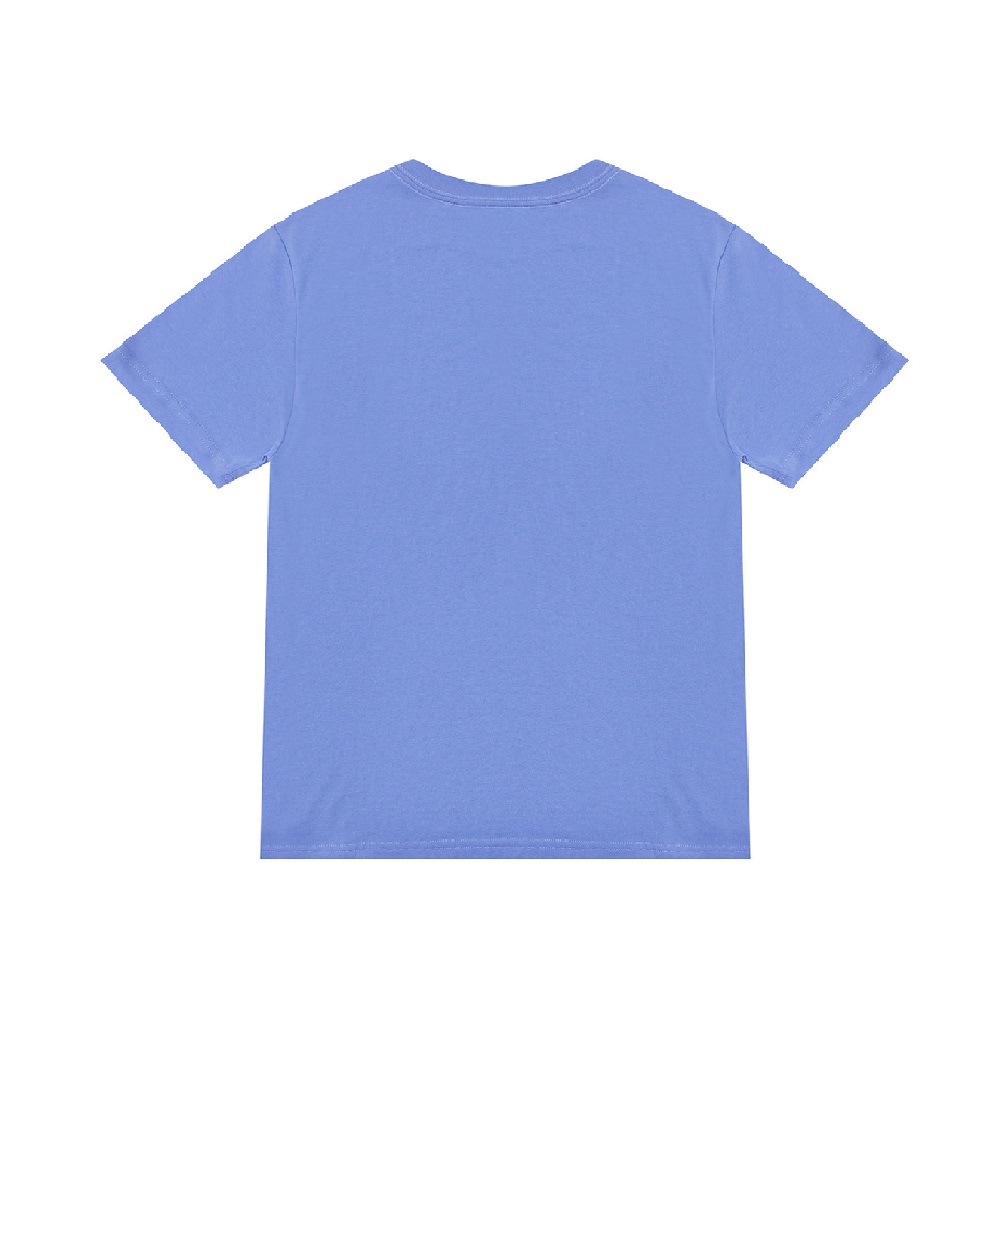 Детская футболка Polo Bear Polo Ralph Lauren Kids 321853828015, голубой цвет • Купить в интернет-магазине Kameron